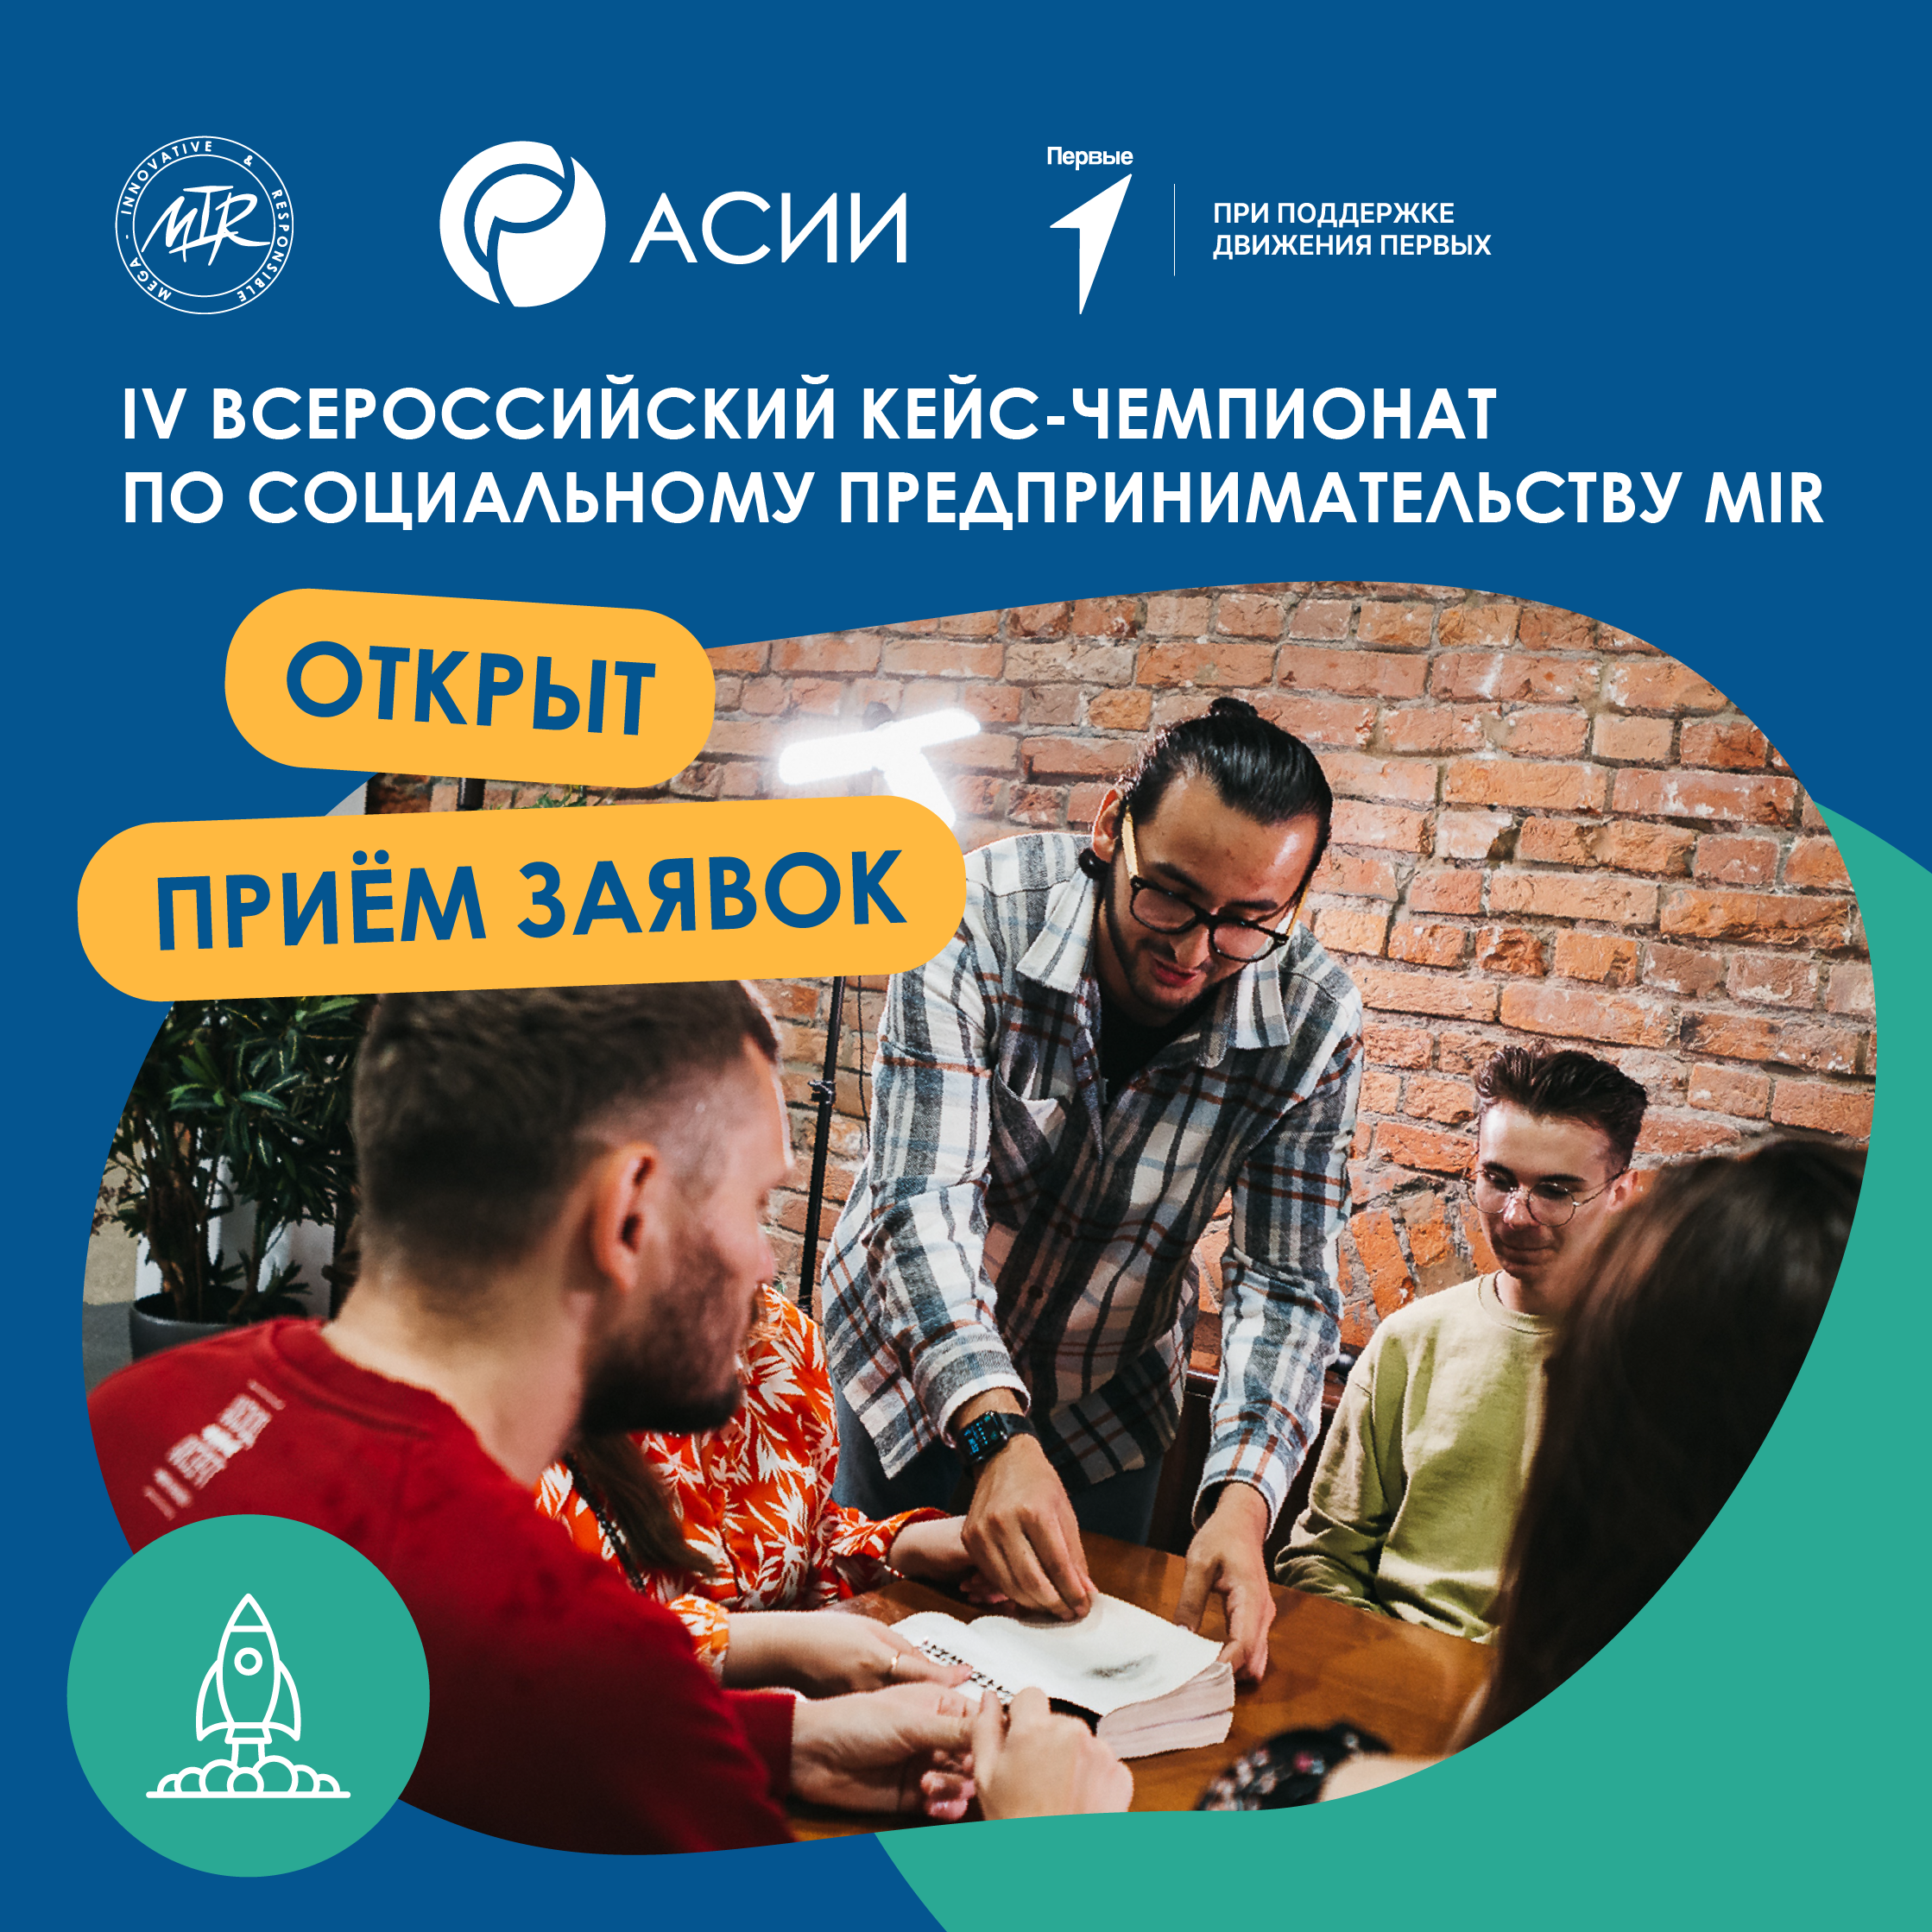 Открыта регистрация на IV Всероссийский кейс-чемпионат по социальному предпринимательству MIR